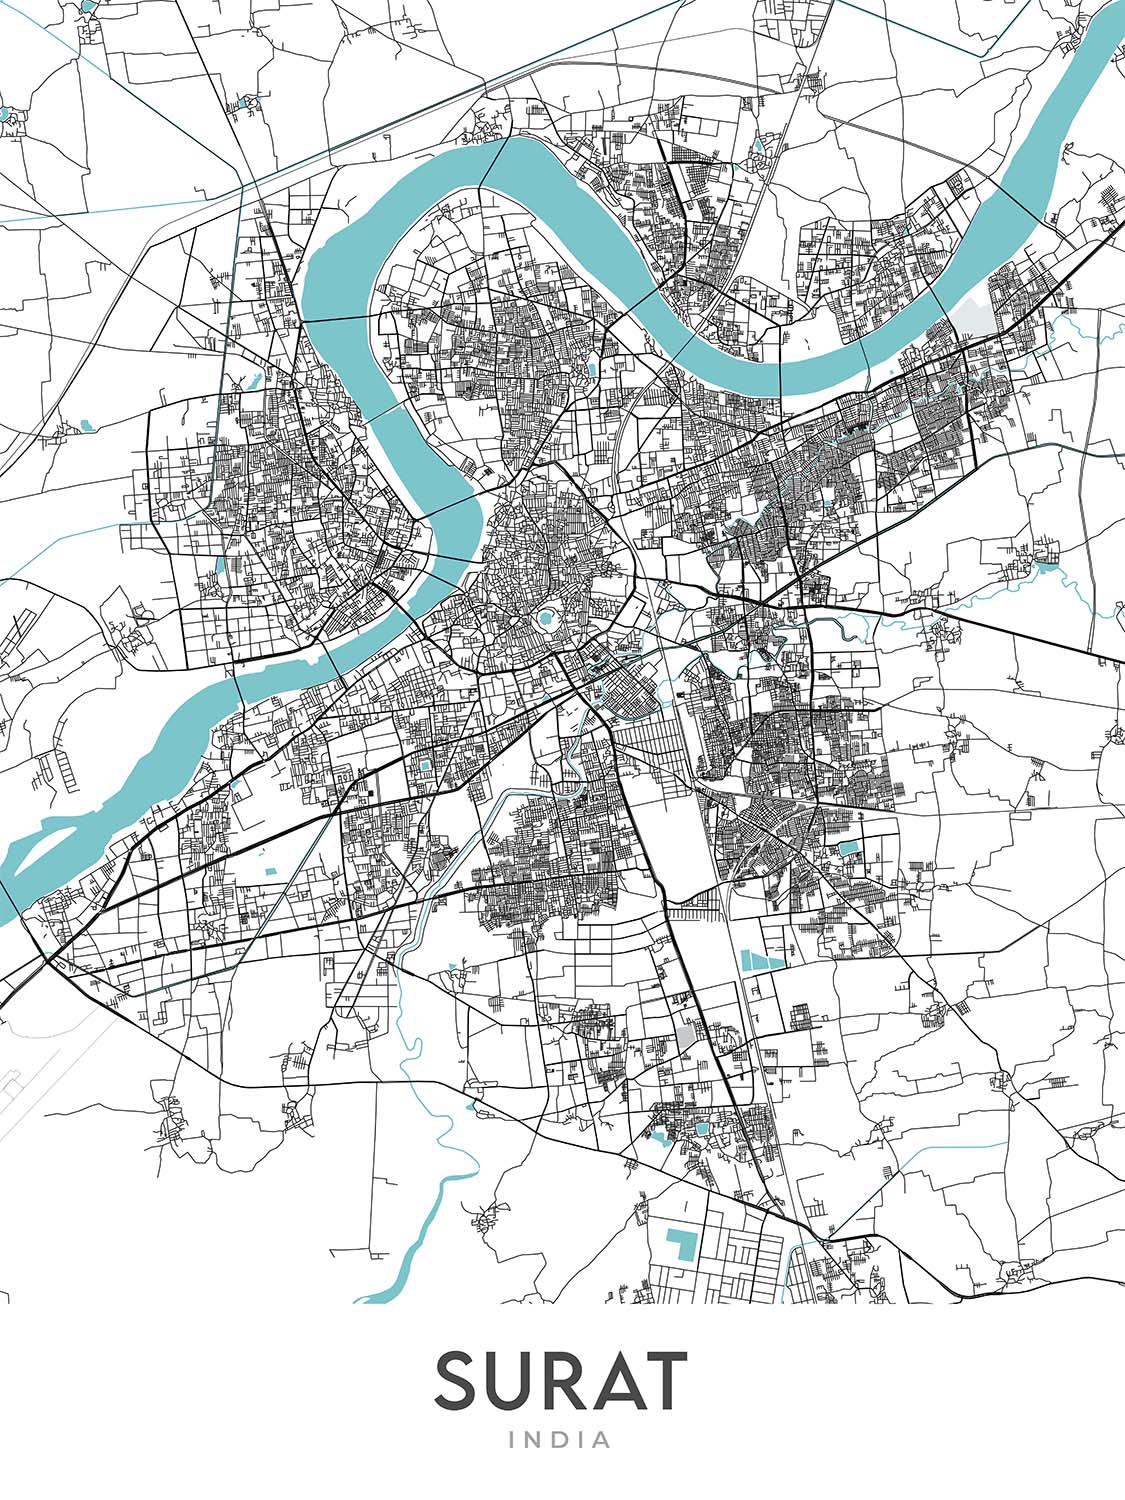 Plan de la ville moderne de Surat, Gujarat : Athwa, rivière Tapi, parc Sarthana, chemin Dumas, jardin hollandais